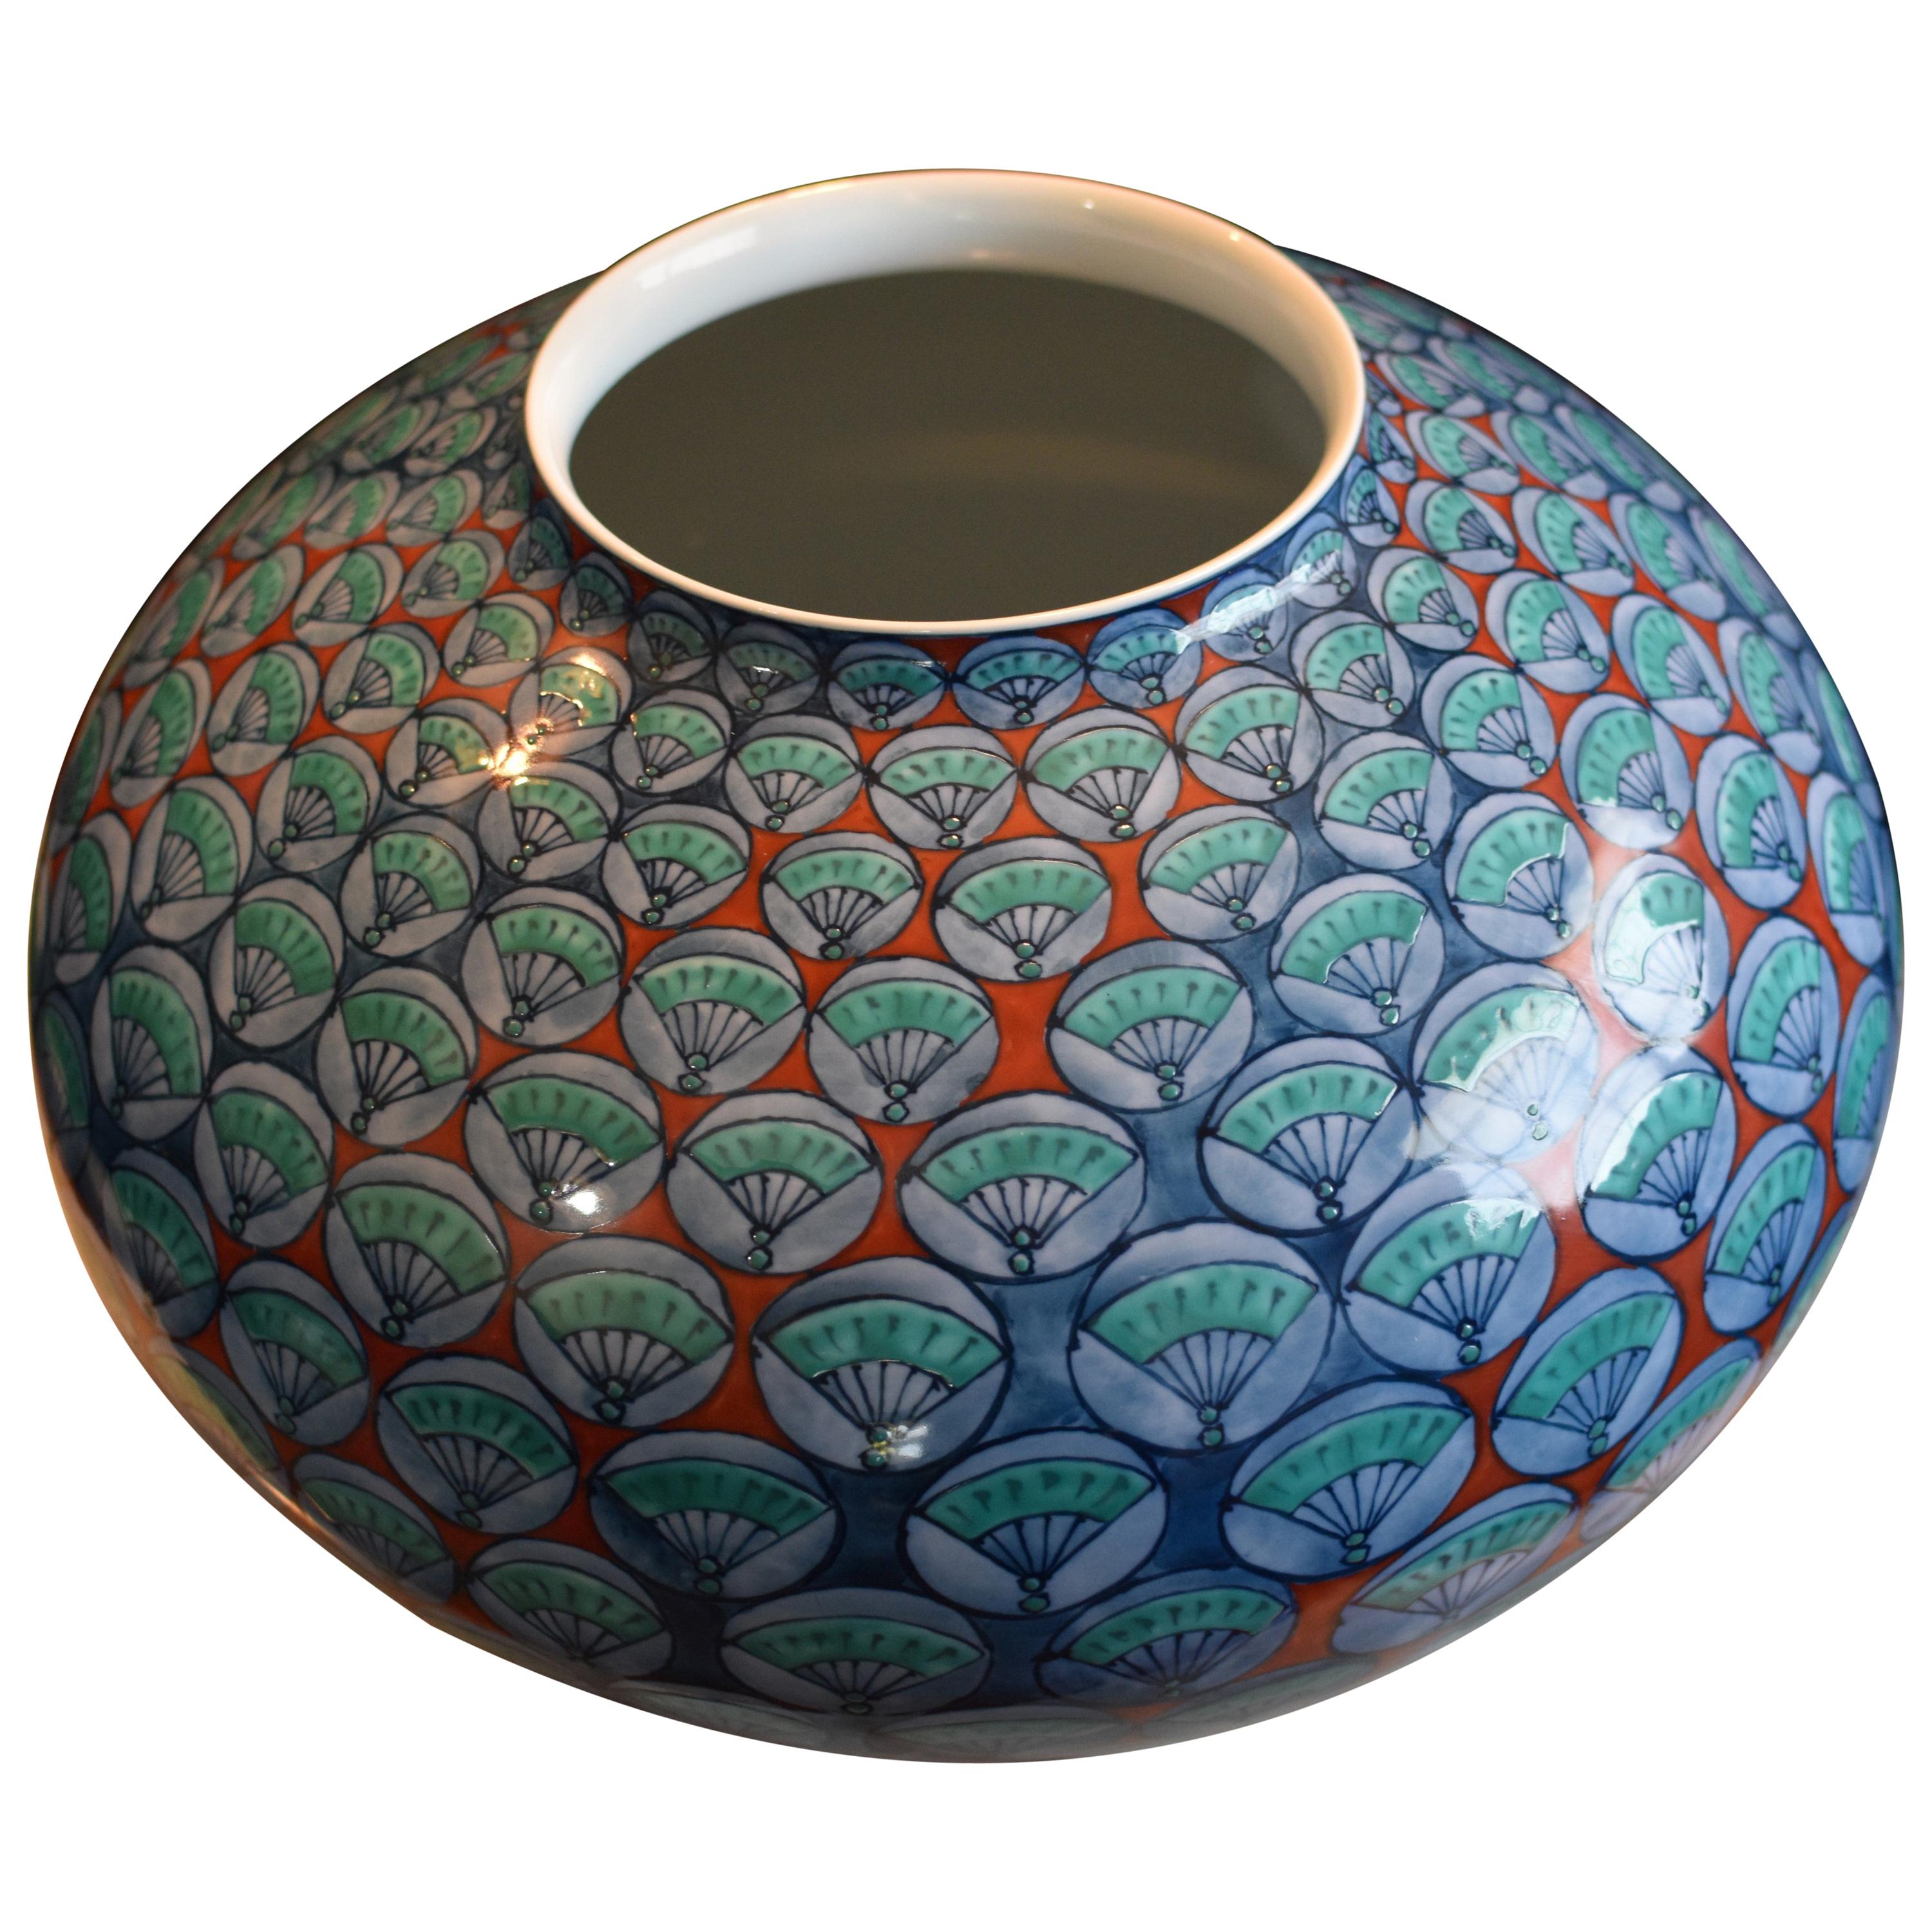 Vase en porcelaine bleu vert rouge par un maître artiste japonais contemporain